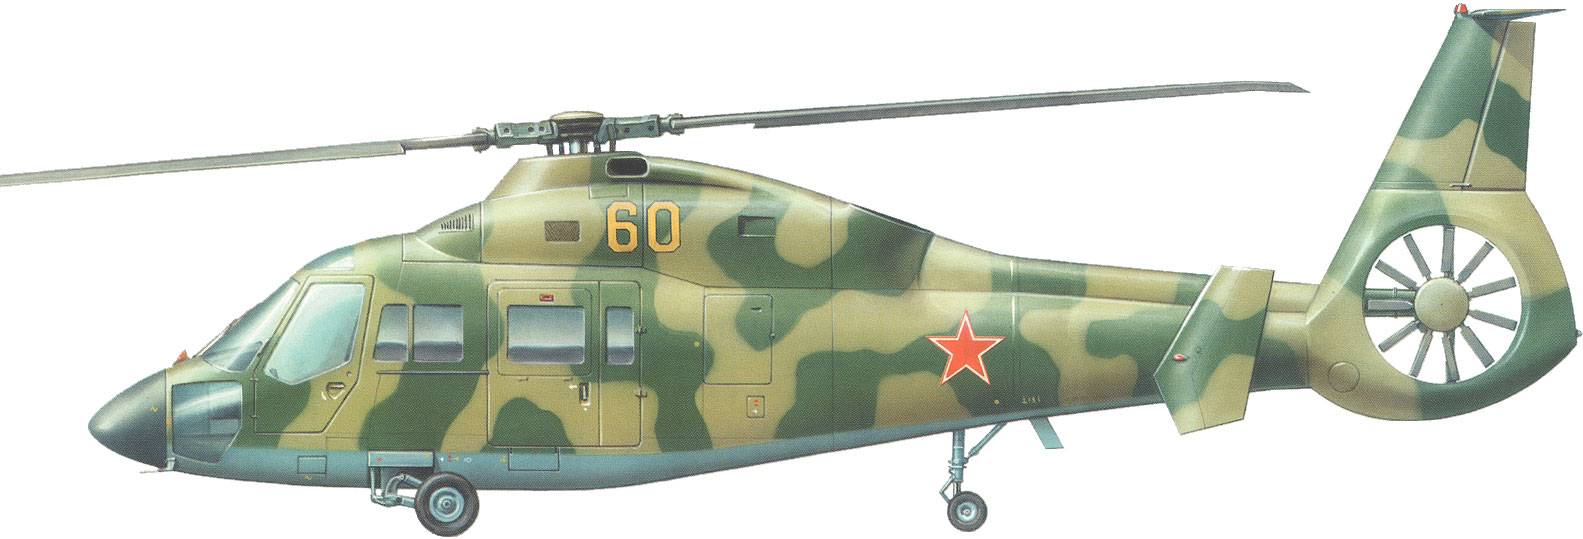 ✅ многоцелевой вертолет ка-60 «касатка» (россия) - iam-fighter.ru